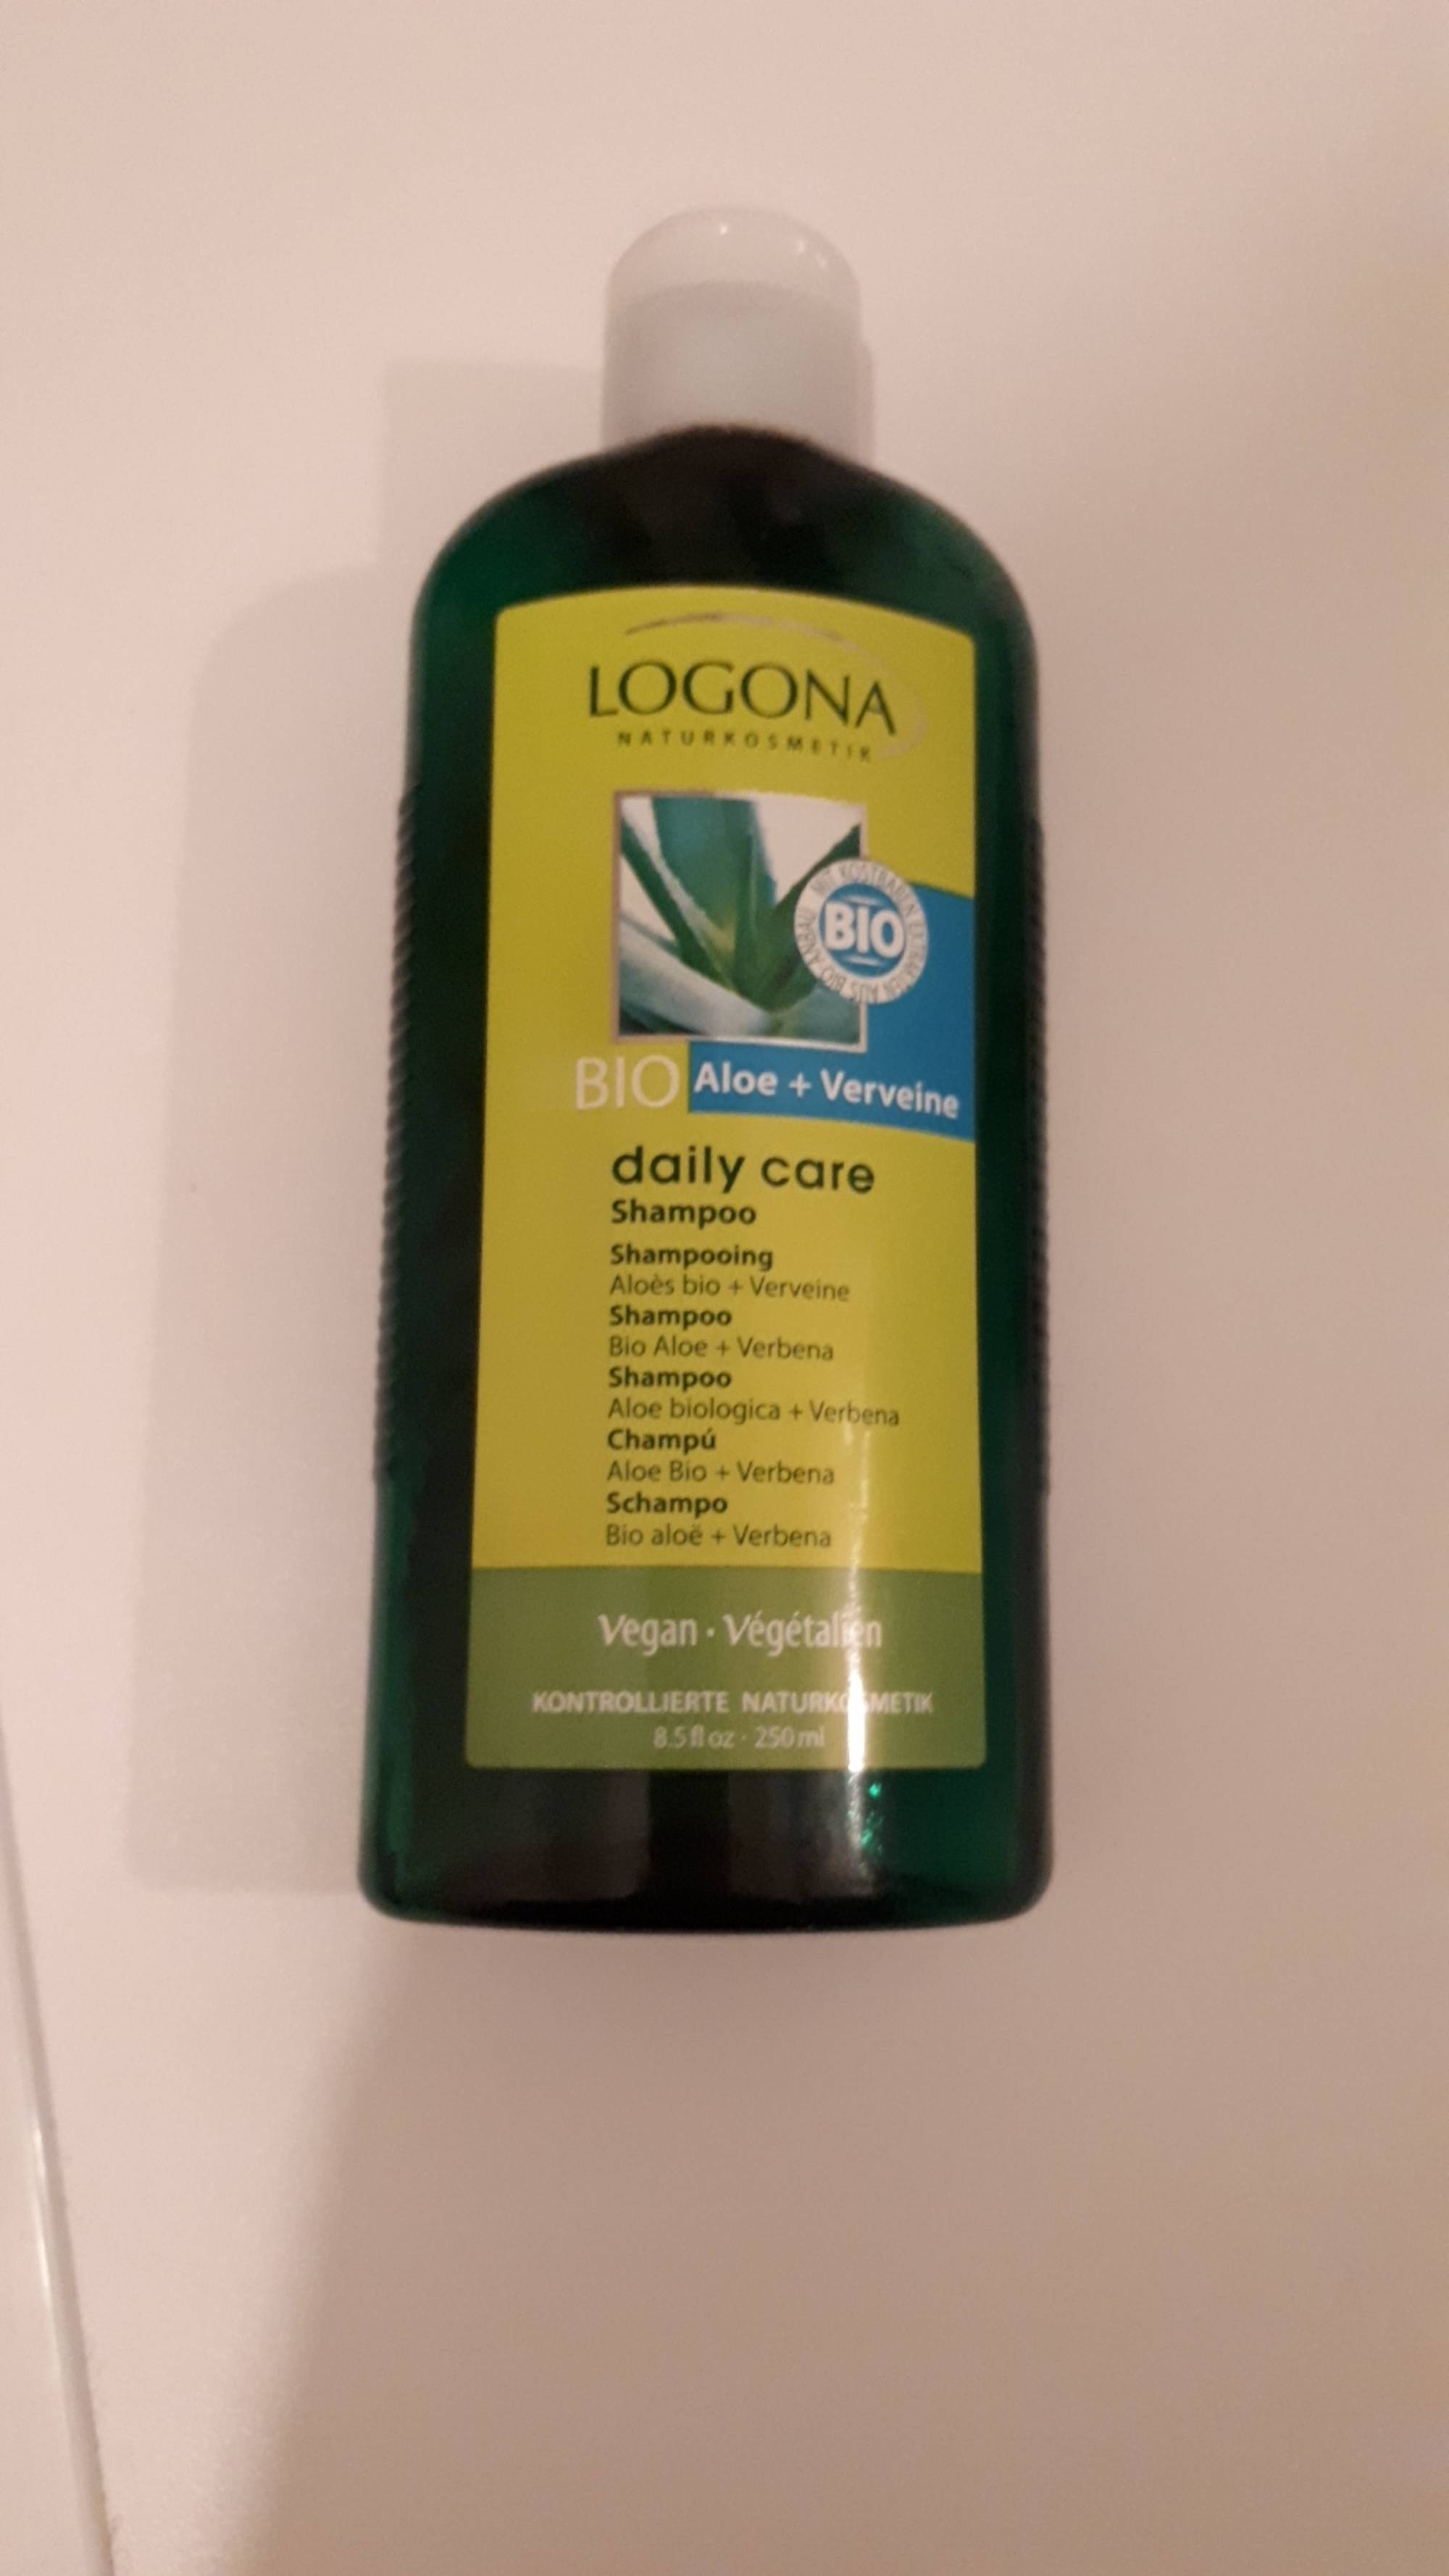 LOGONA - Daily Care shampooing aloés bio verveine 